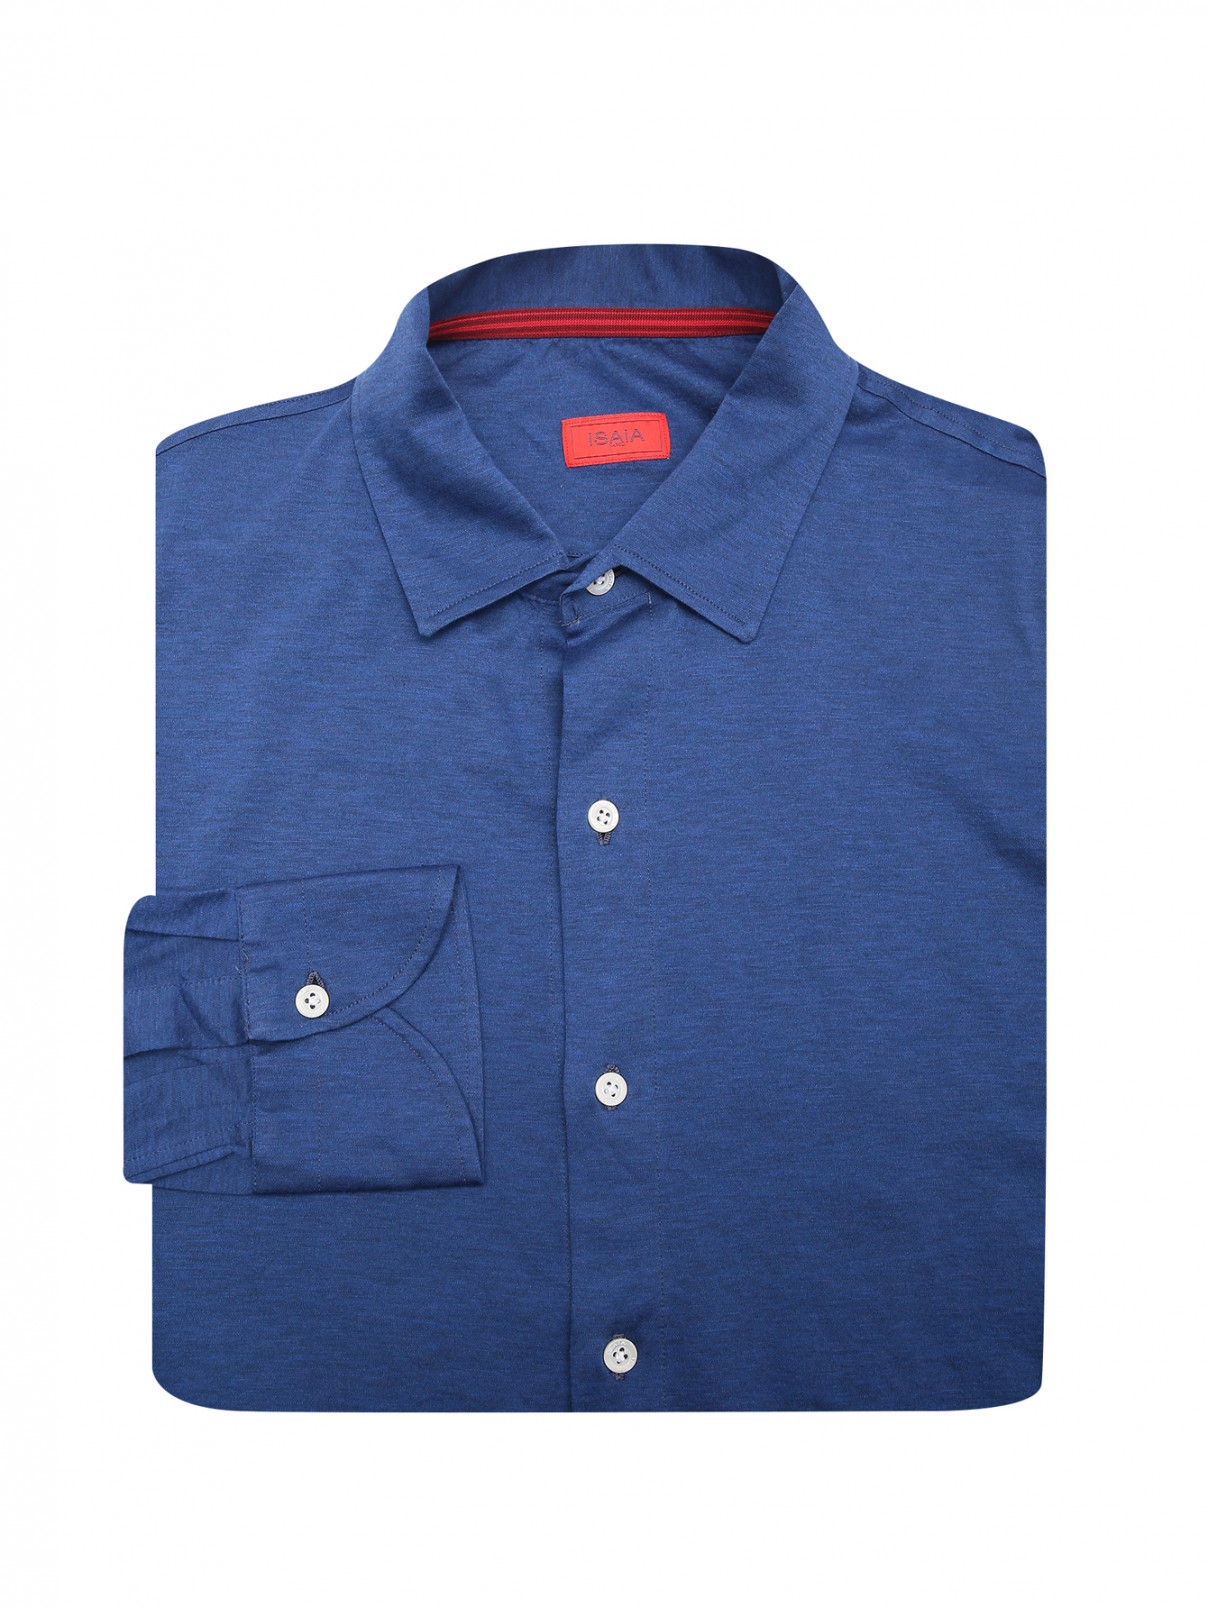 Рубашка из хлопка Isaia  –  Общий вид  – Цвет:  Синий